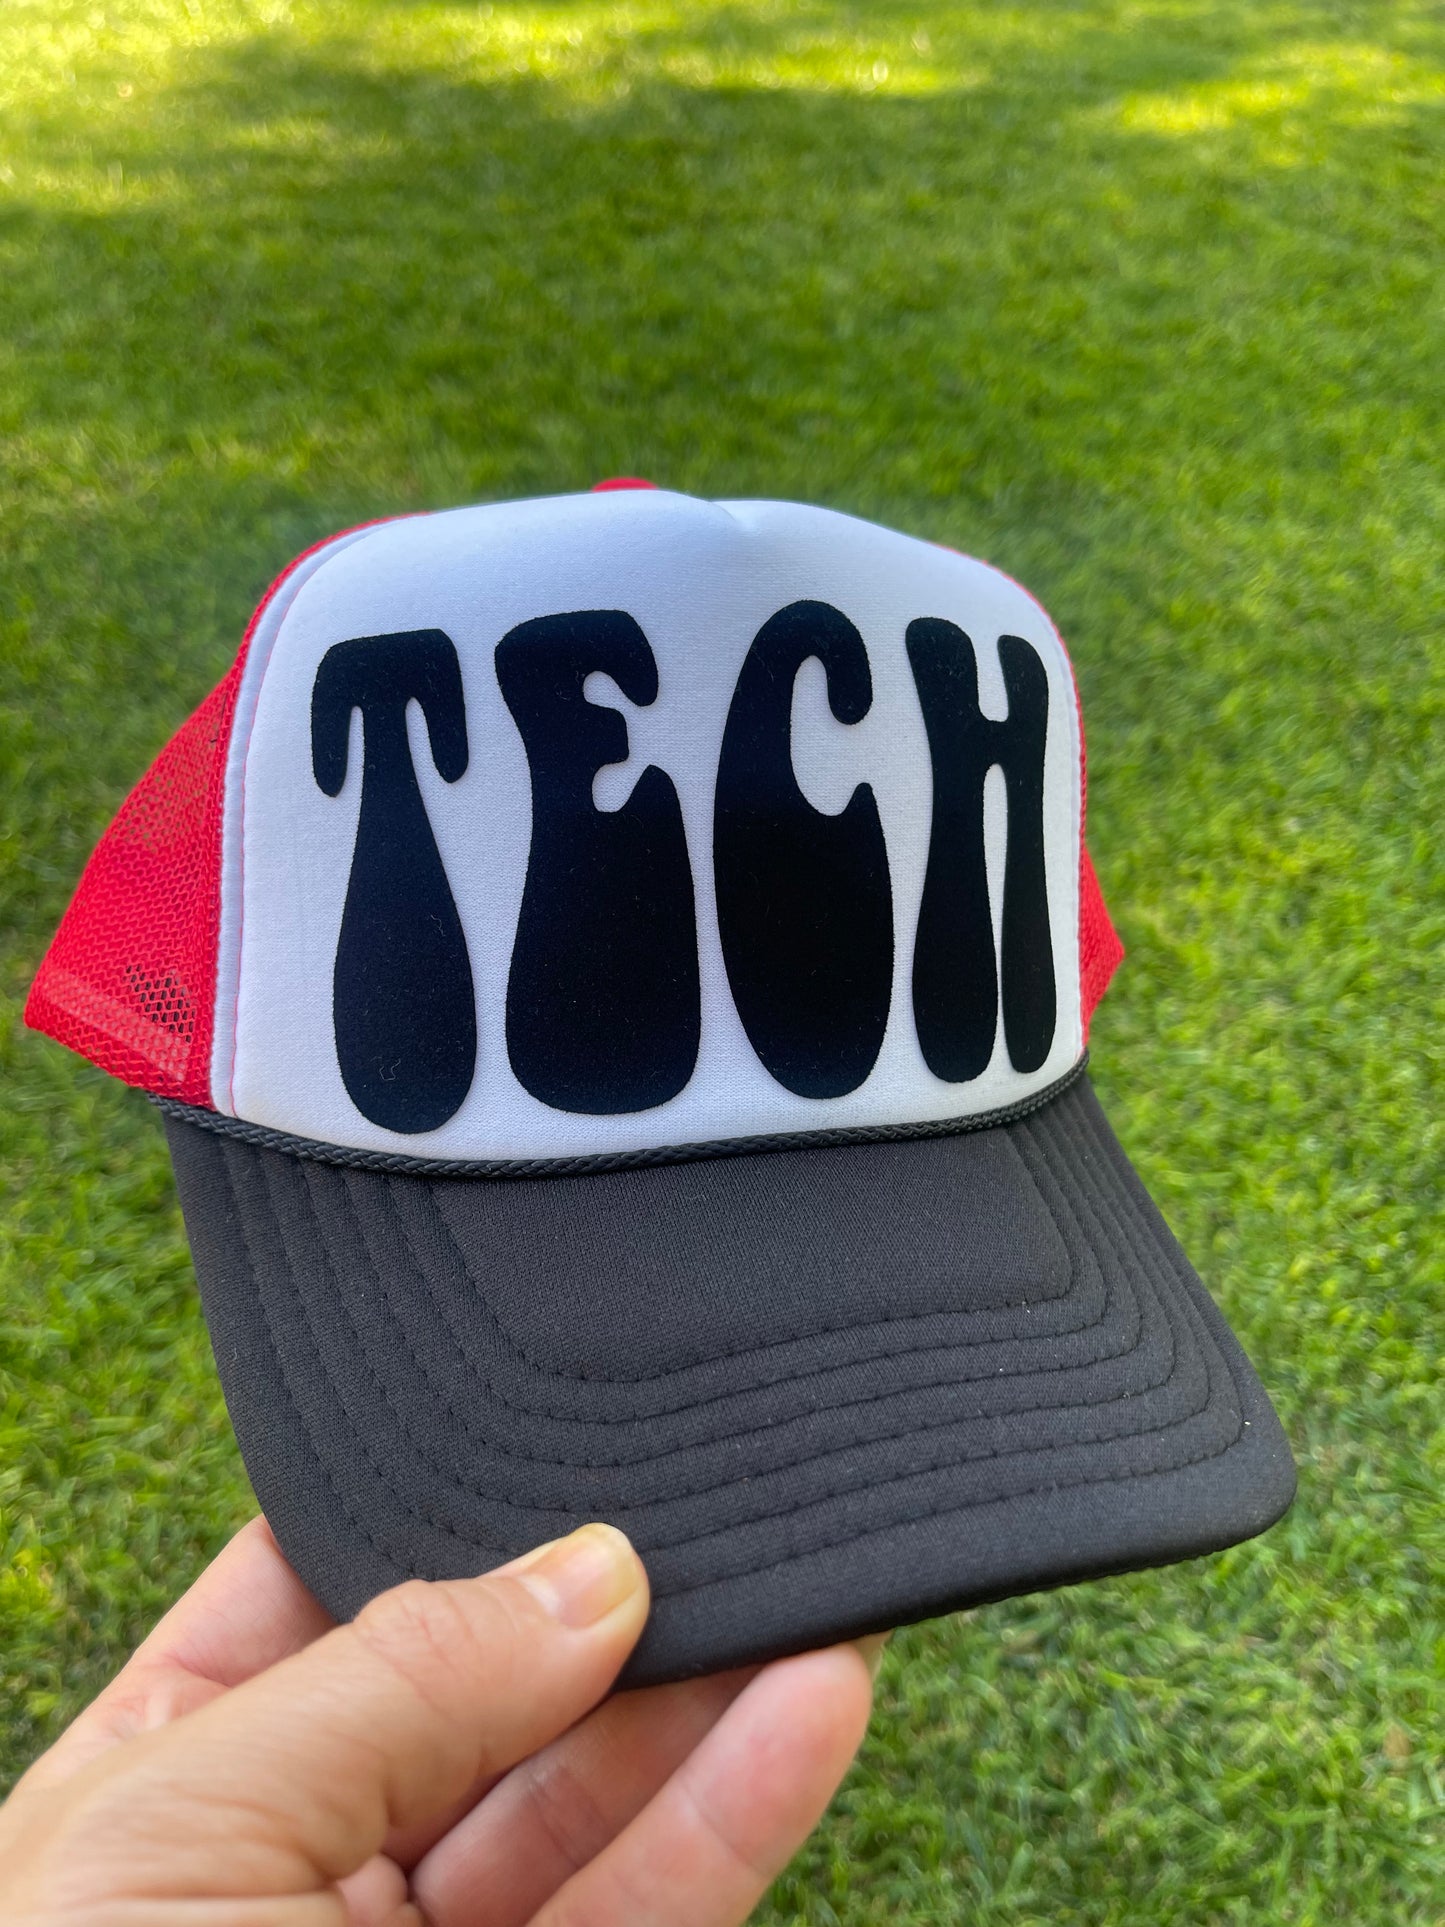 TECH groovy trucker hat